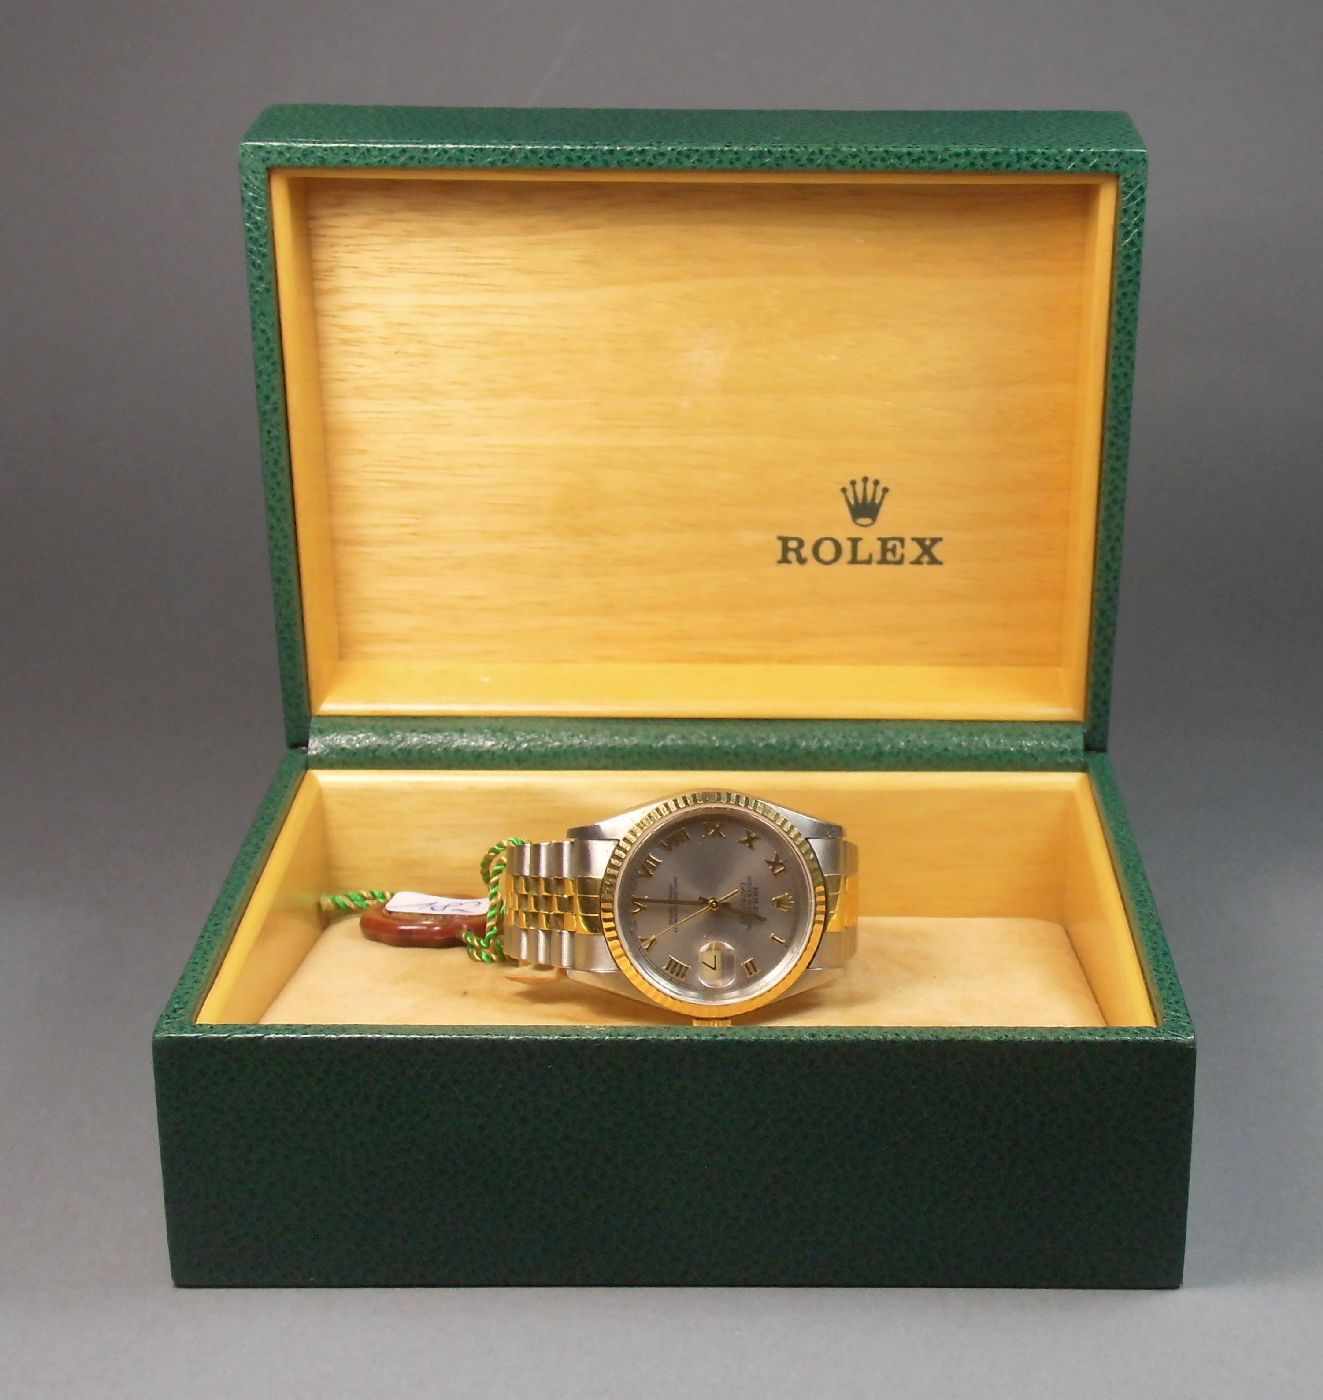 ROLEX OYSTER PERPETUAL DATEJUST - HERRENARMBANDUHR / wristwatch, Uhr und Band Stahl und 18 kt. - Image 4 of 6